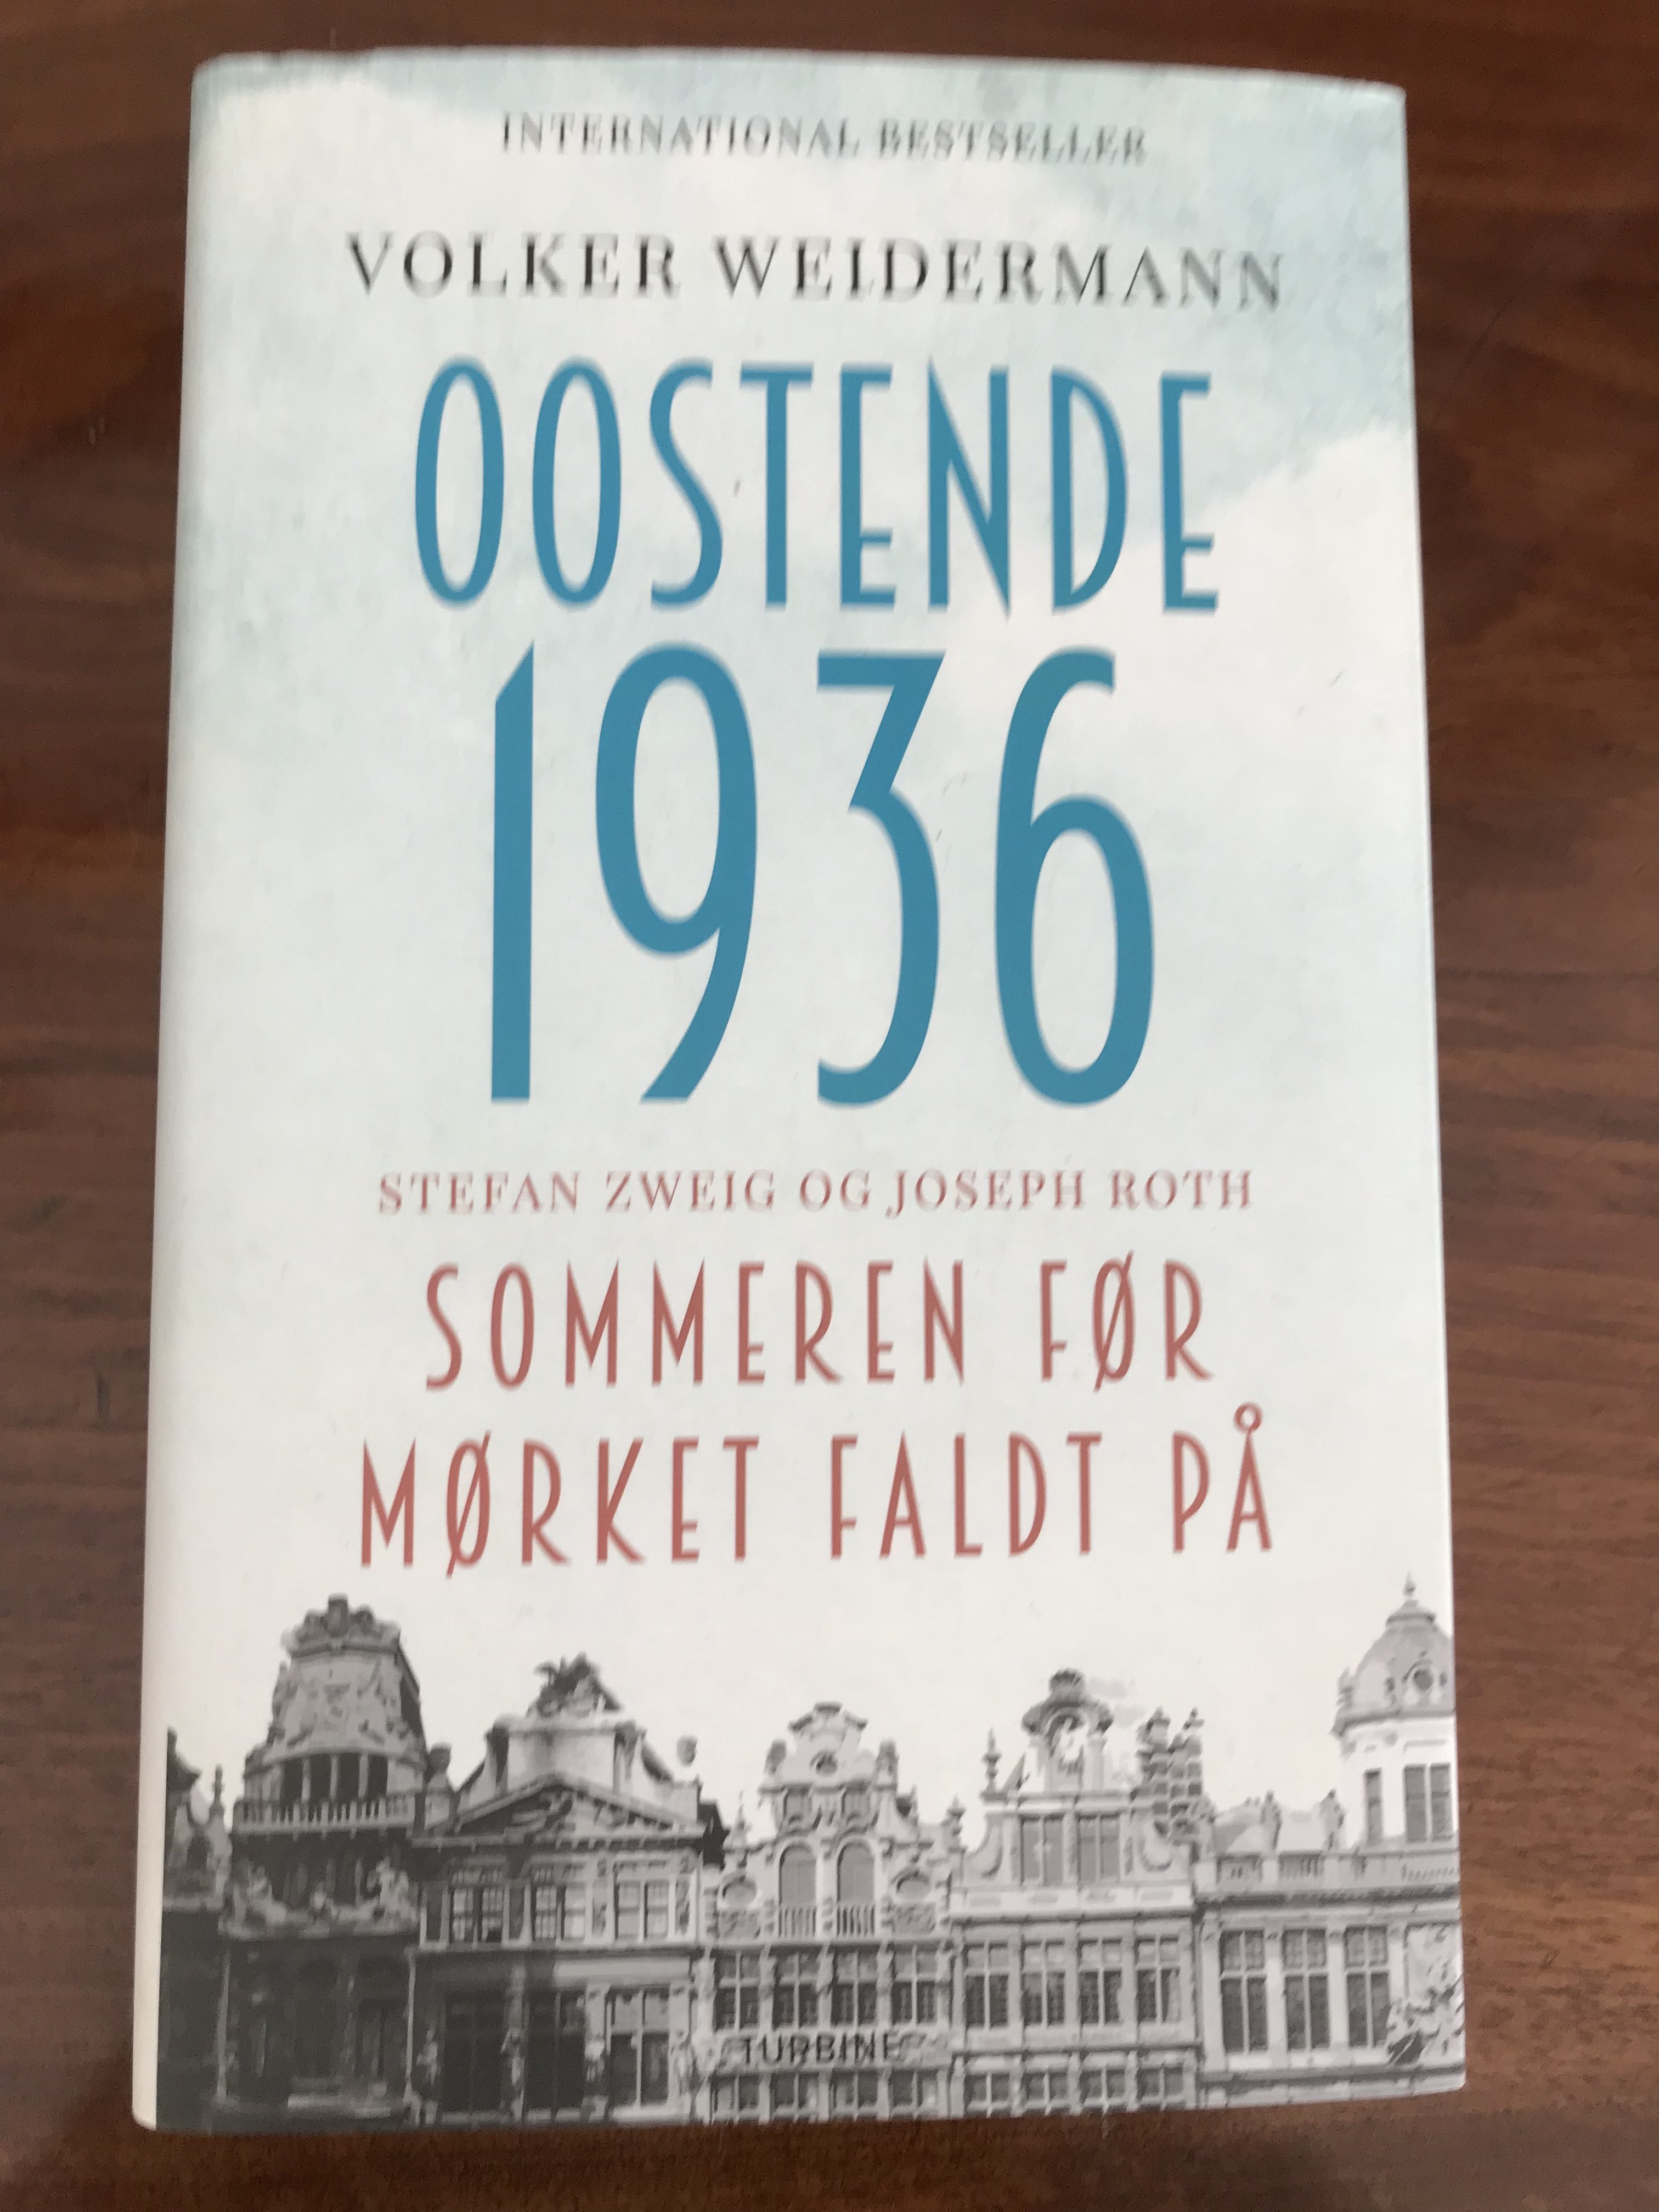 Volker Weidermann: Oostende 1936. Sommeren før mørket faldt på